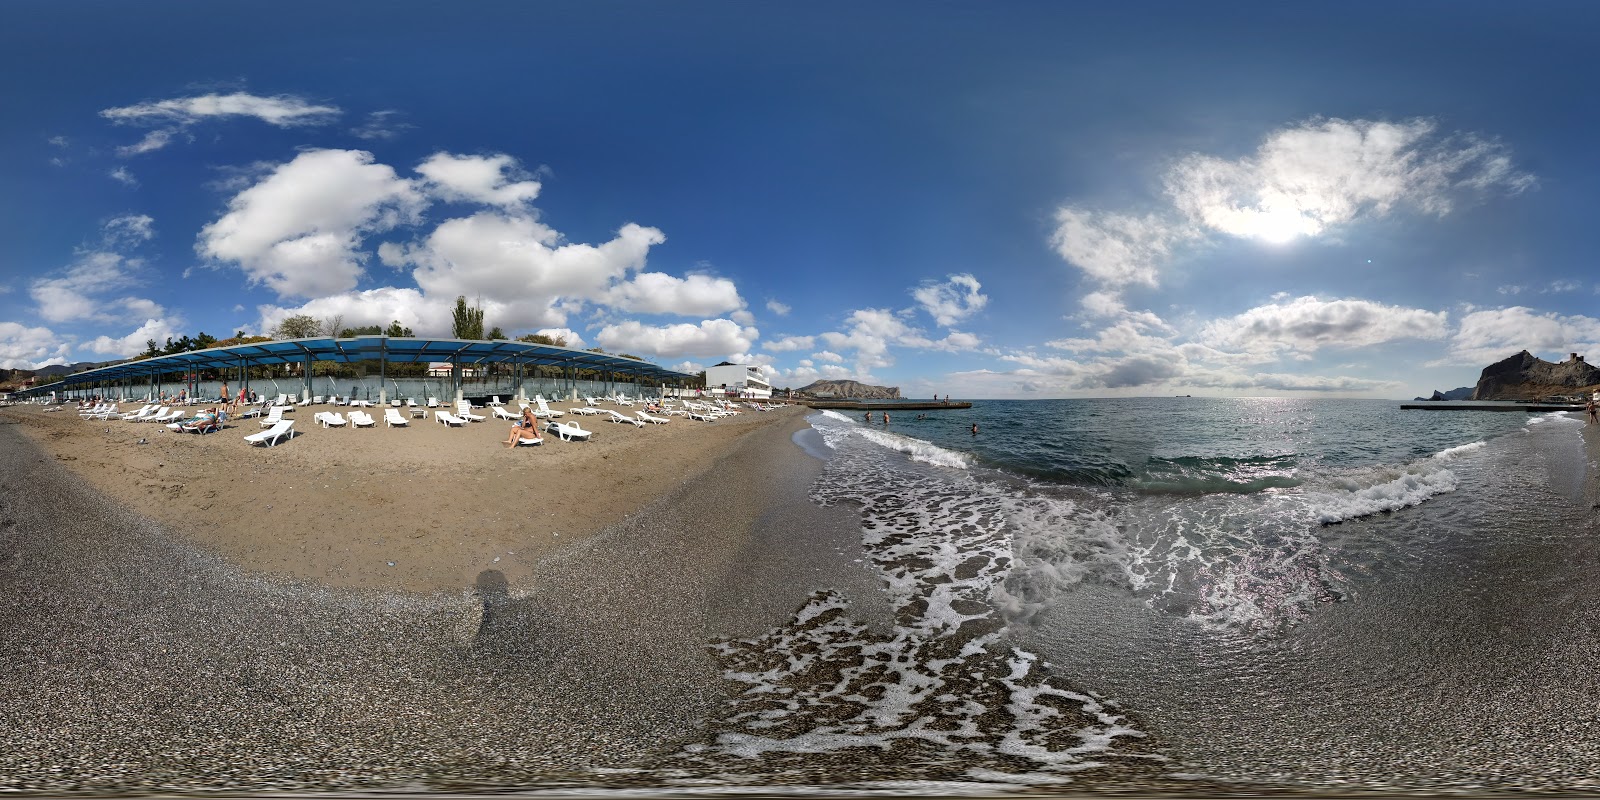 Zdjęcie Rassvet Beach - popularne miejsce wśród znawców relaksu